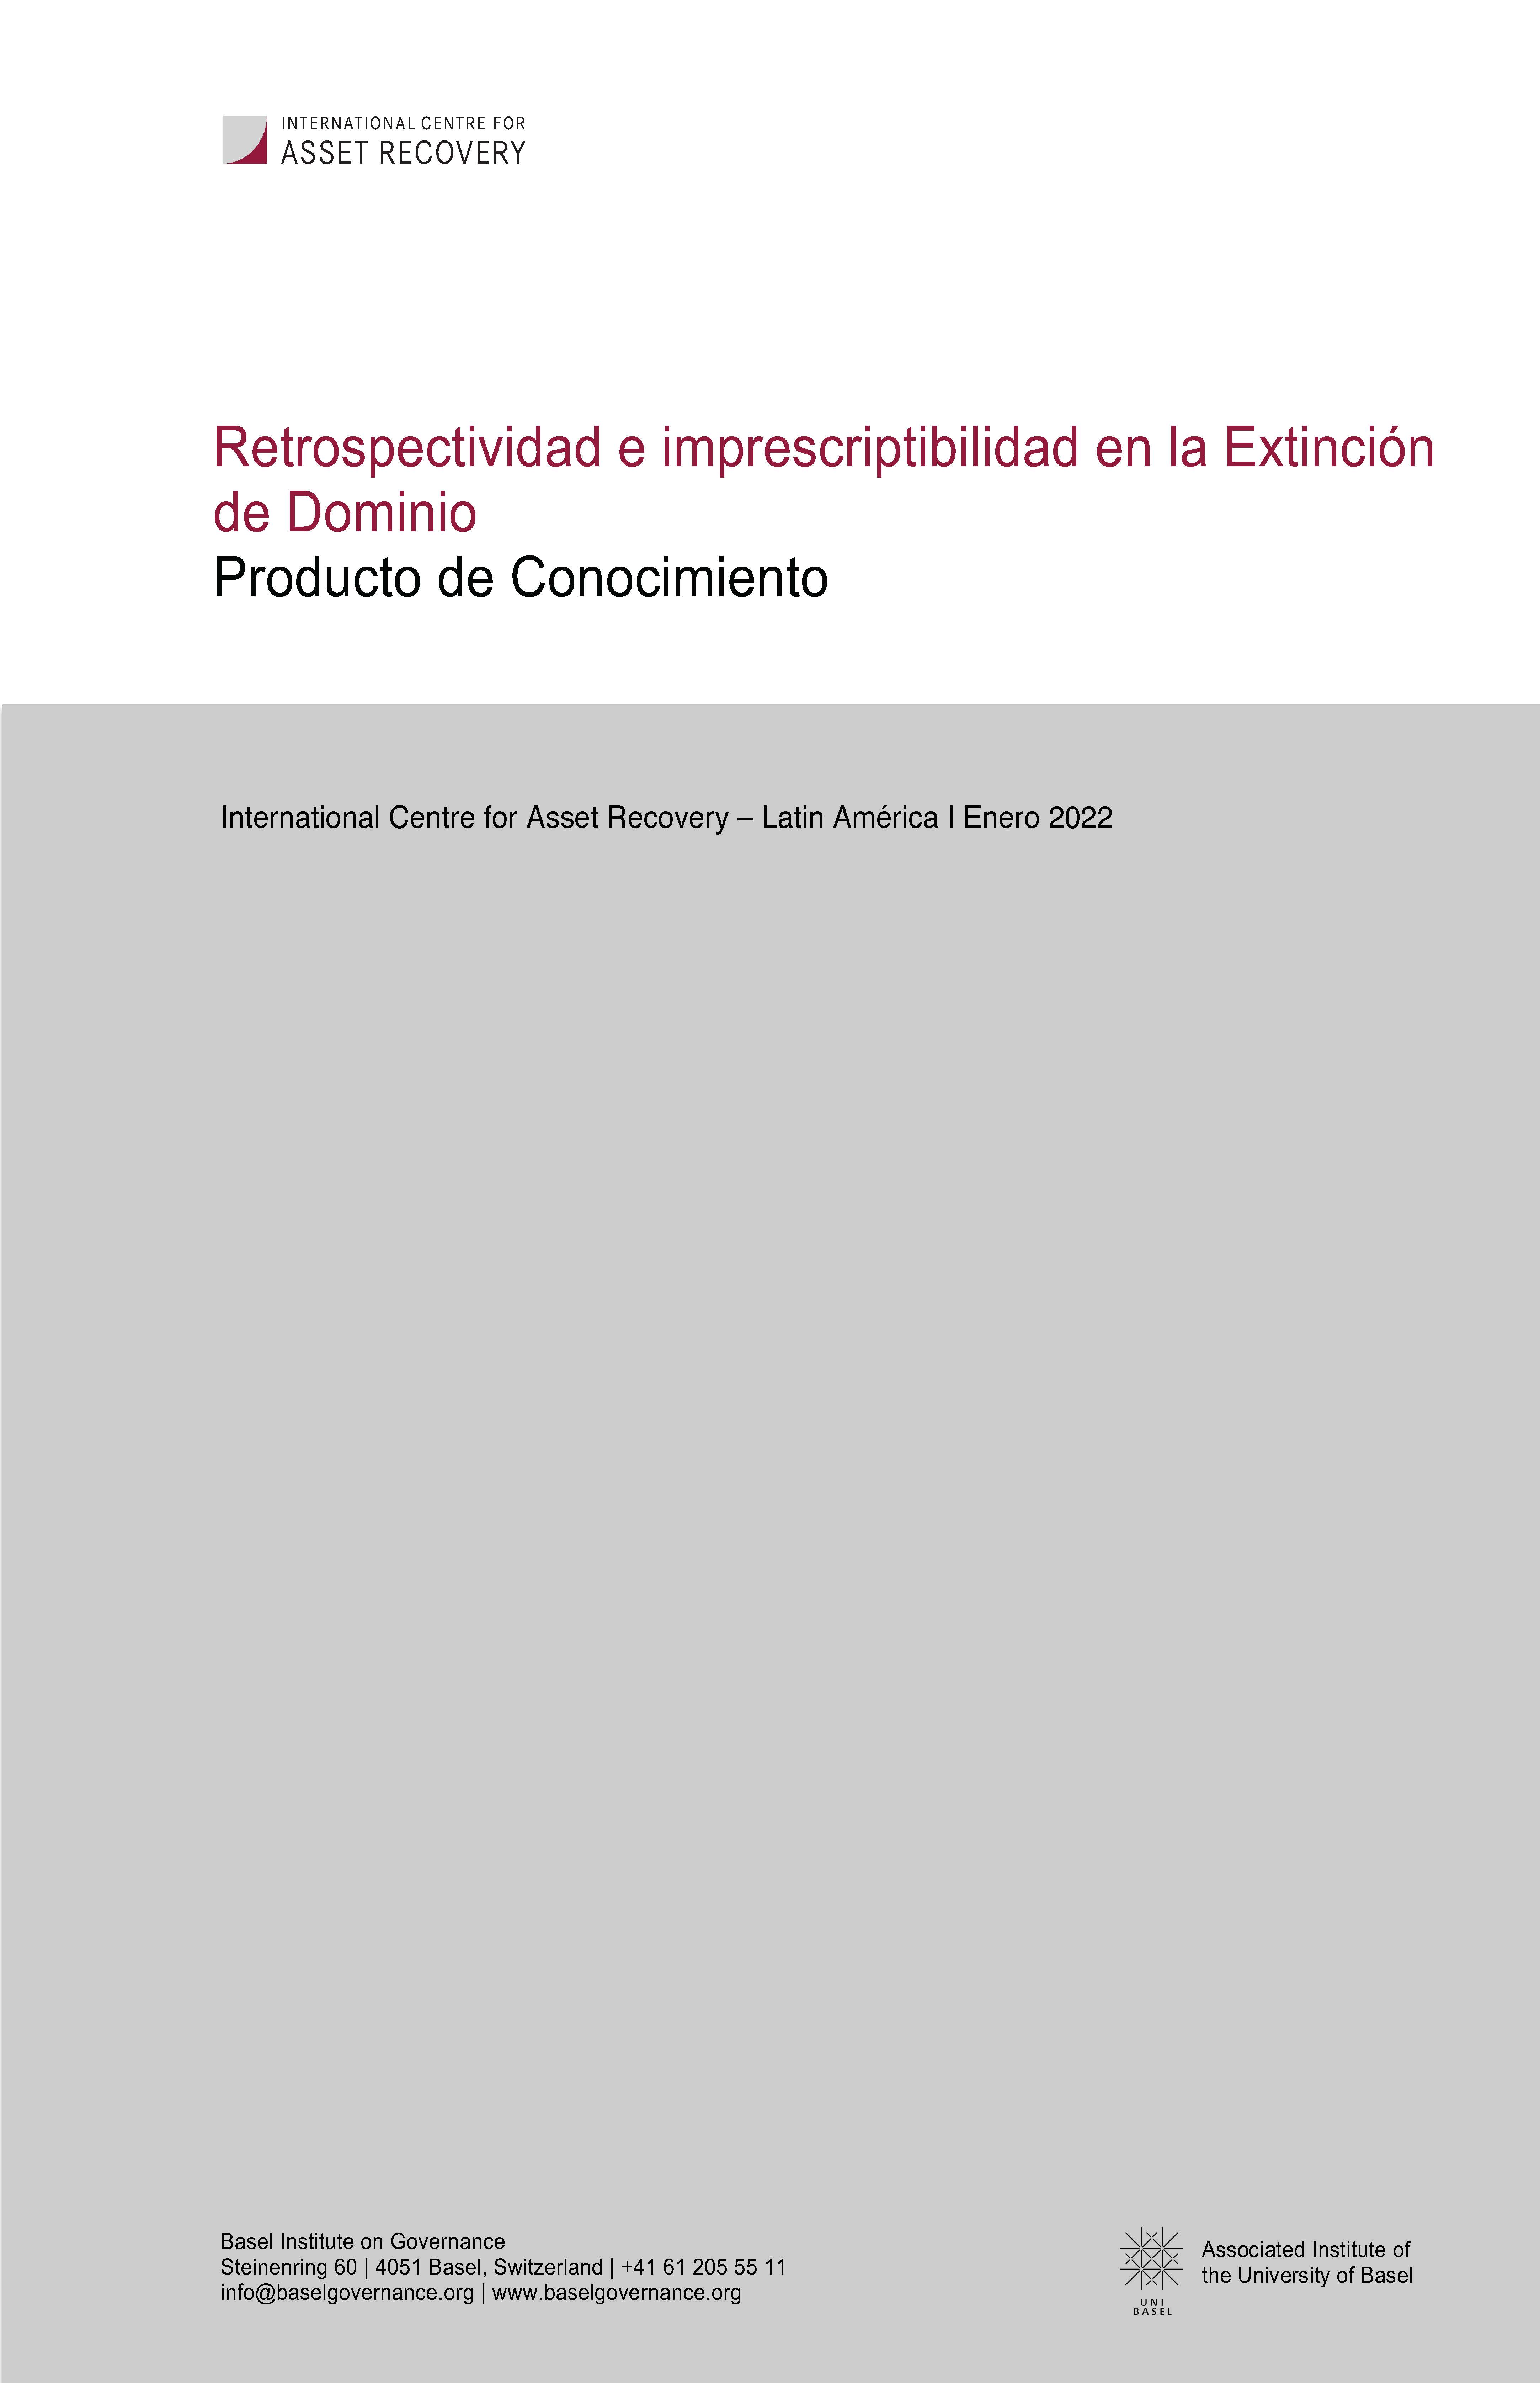 Cover page of publication on Retrospectividad e imprescriptibilidad en la Extincion de Dominio